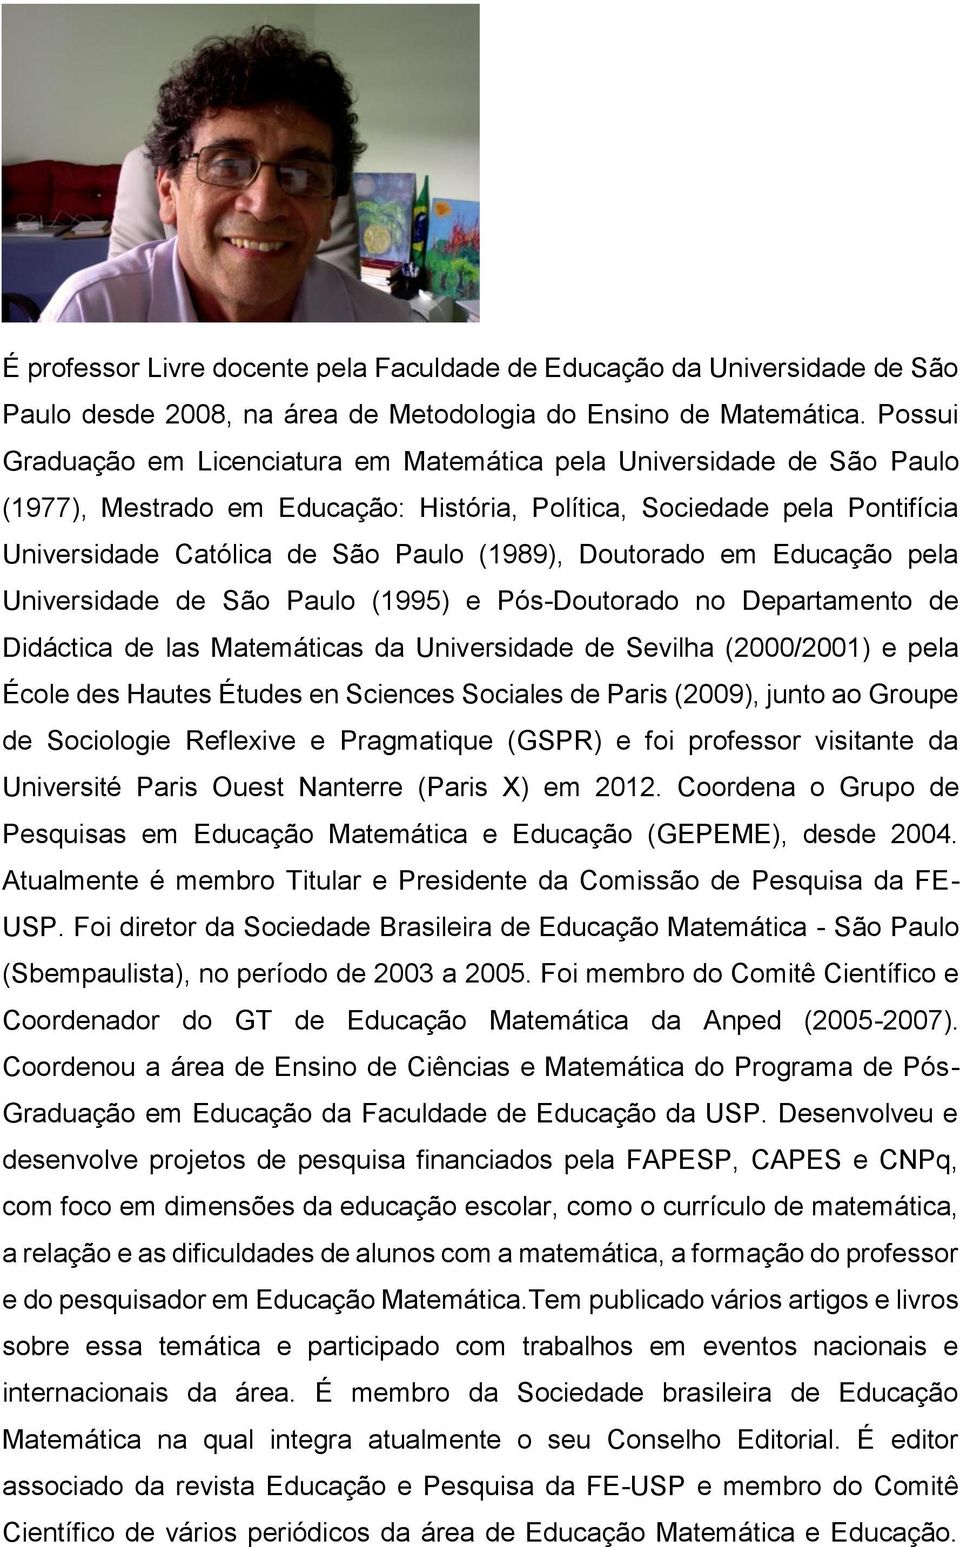 Doutorado em Educação pela Universidade de São Paulo (1995) e Pós-Doutorado no Departamento de Didáctica de las Matemáticas da Universidade de Sevilha (2000/2001) e pela École des Hautes Études en